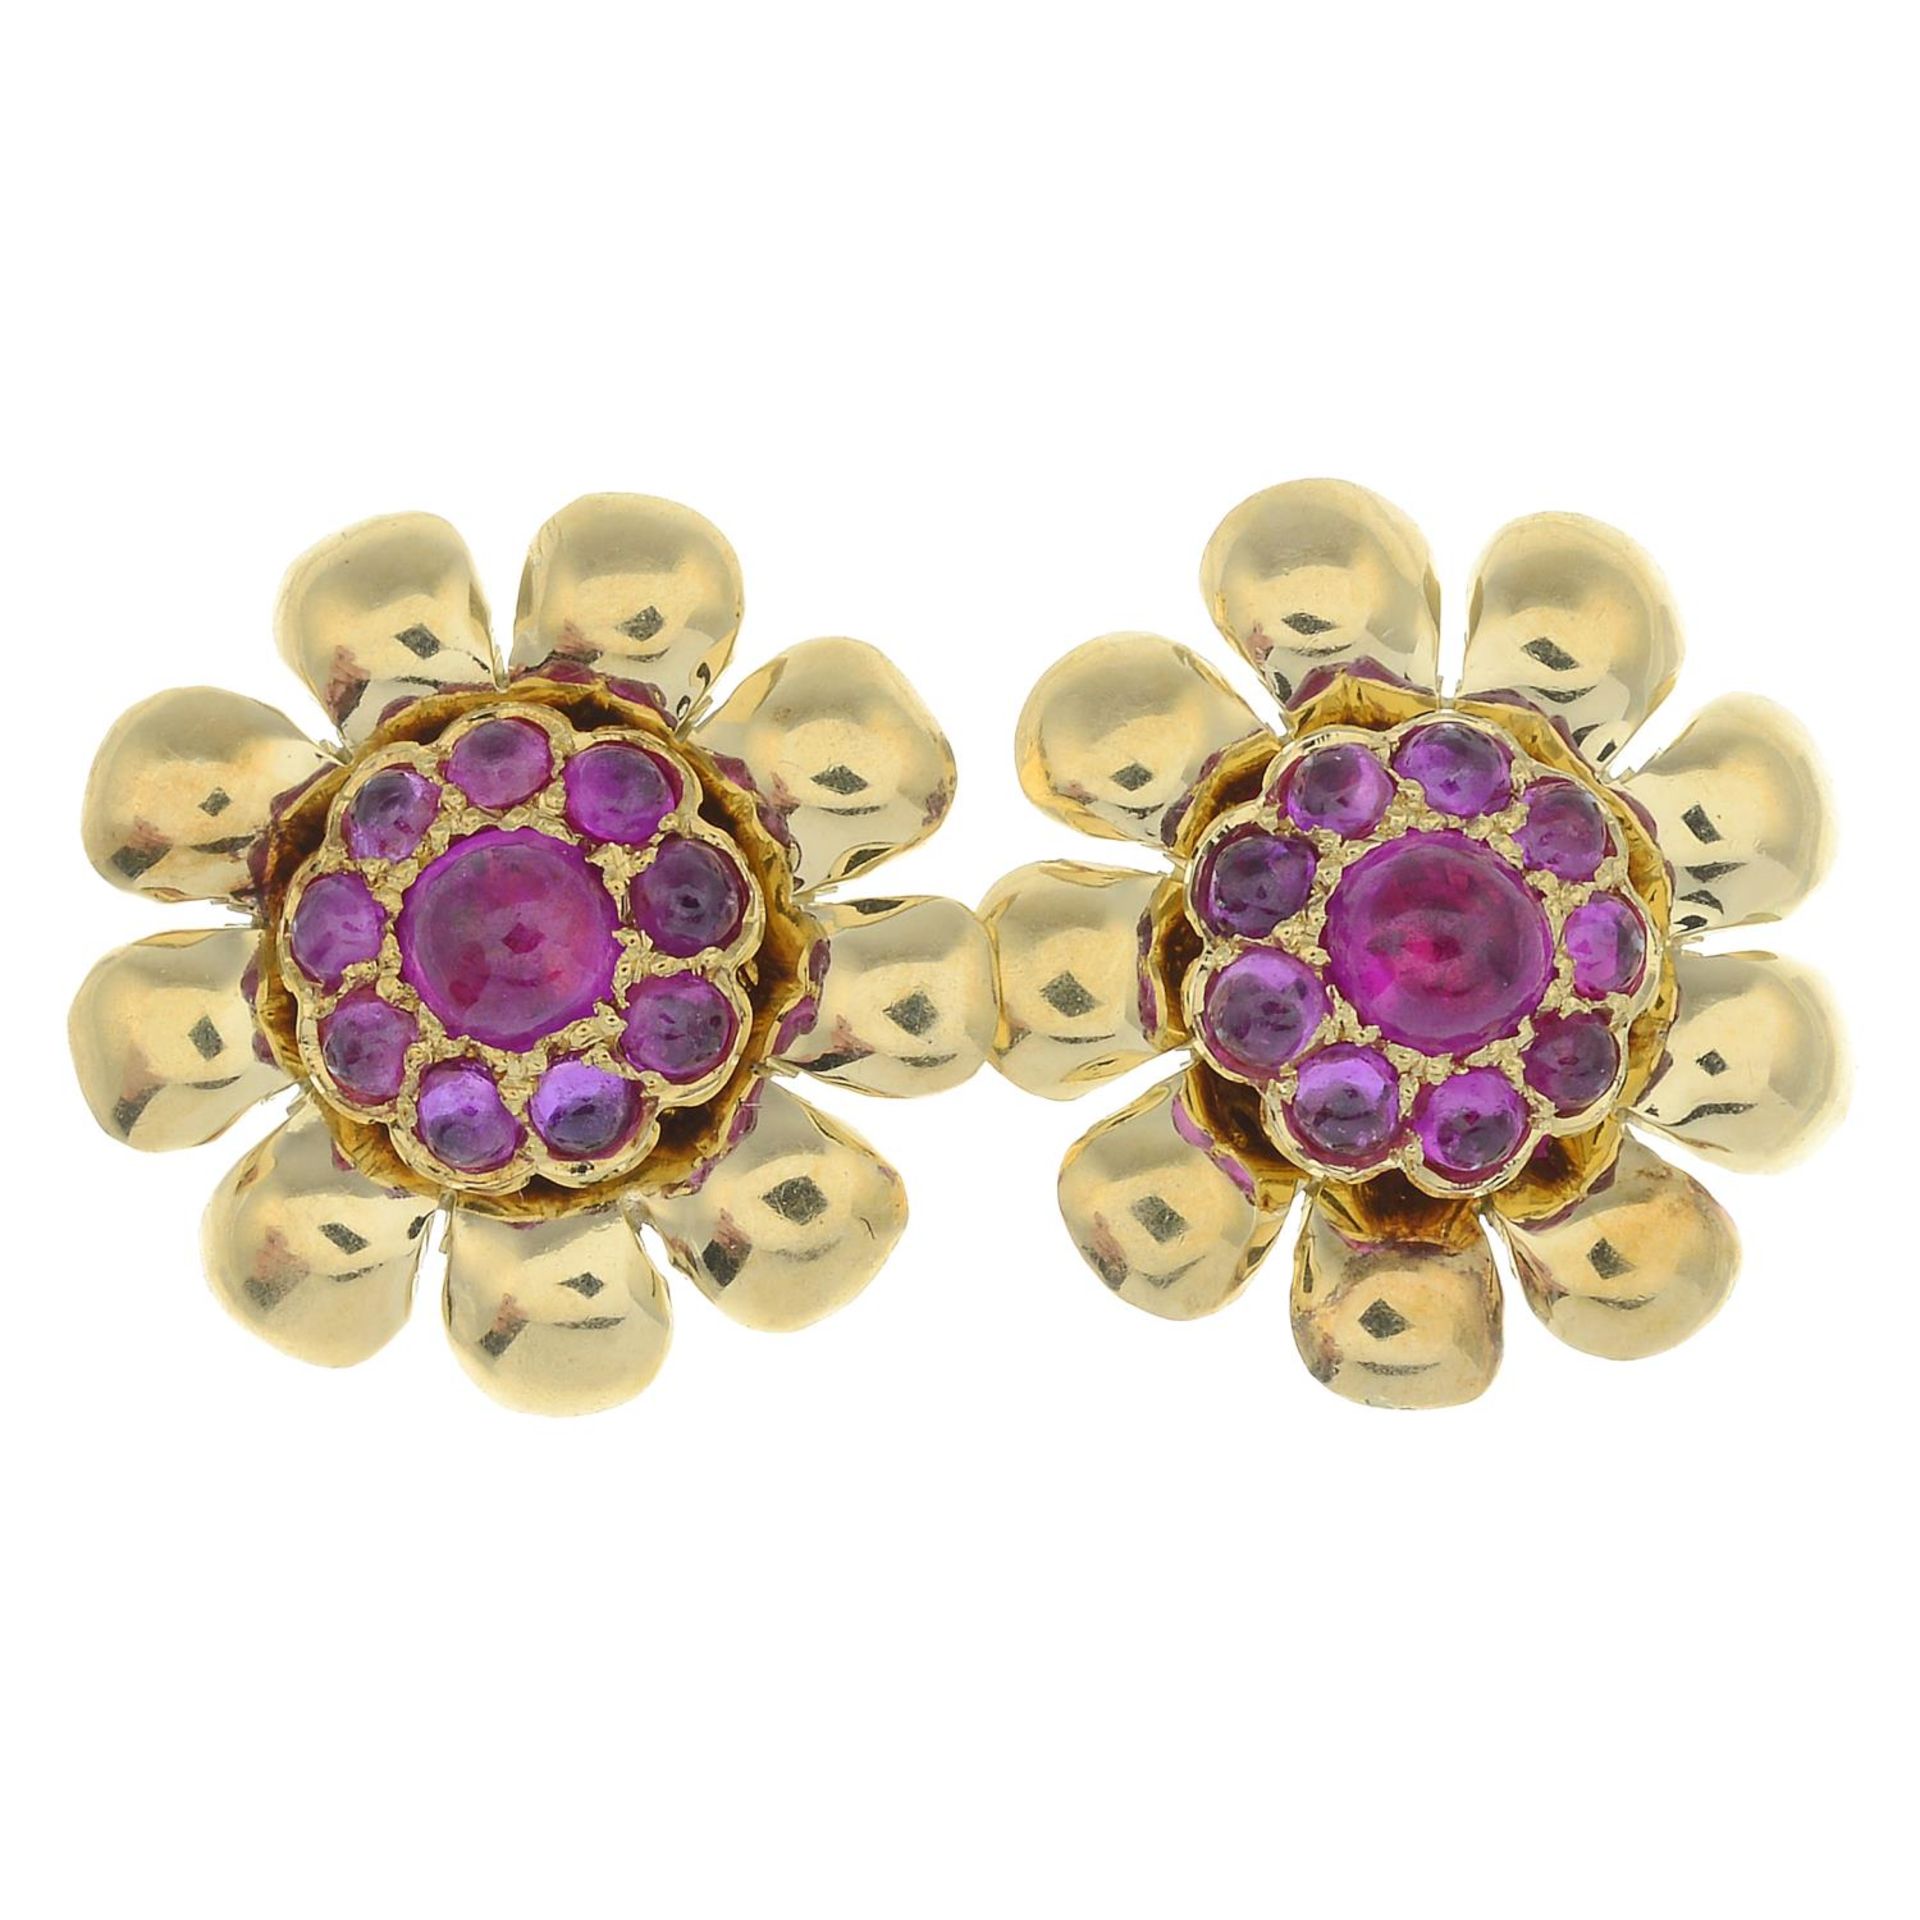 A pair of ruby floral earrings.Diameter 1.5cms.